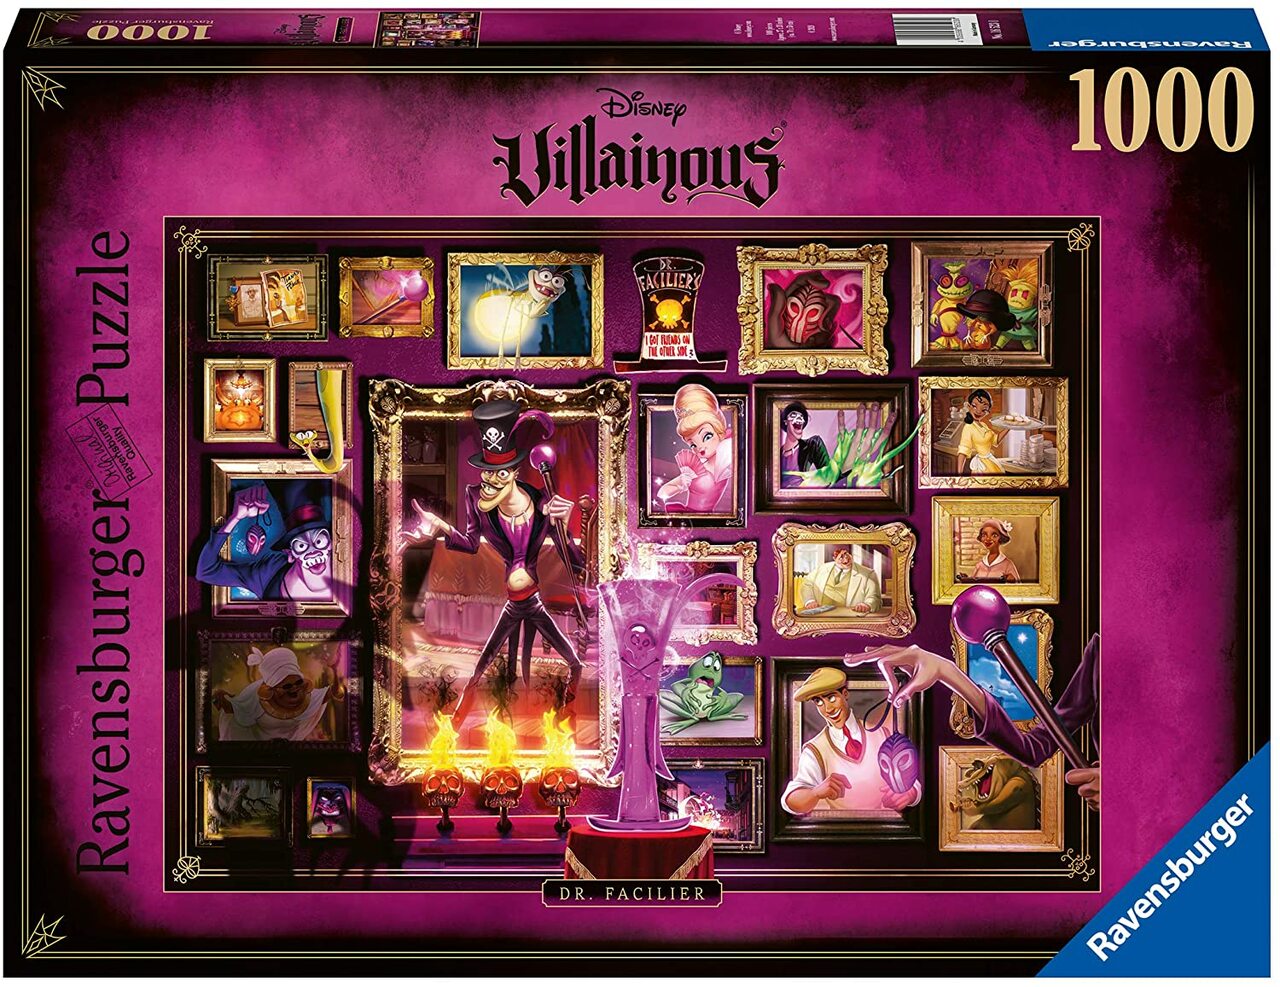 Disney Villainous - Dr. Facilier (1000 pc puzzle)